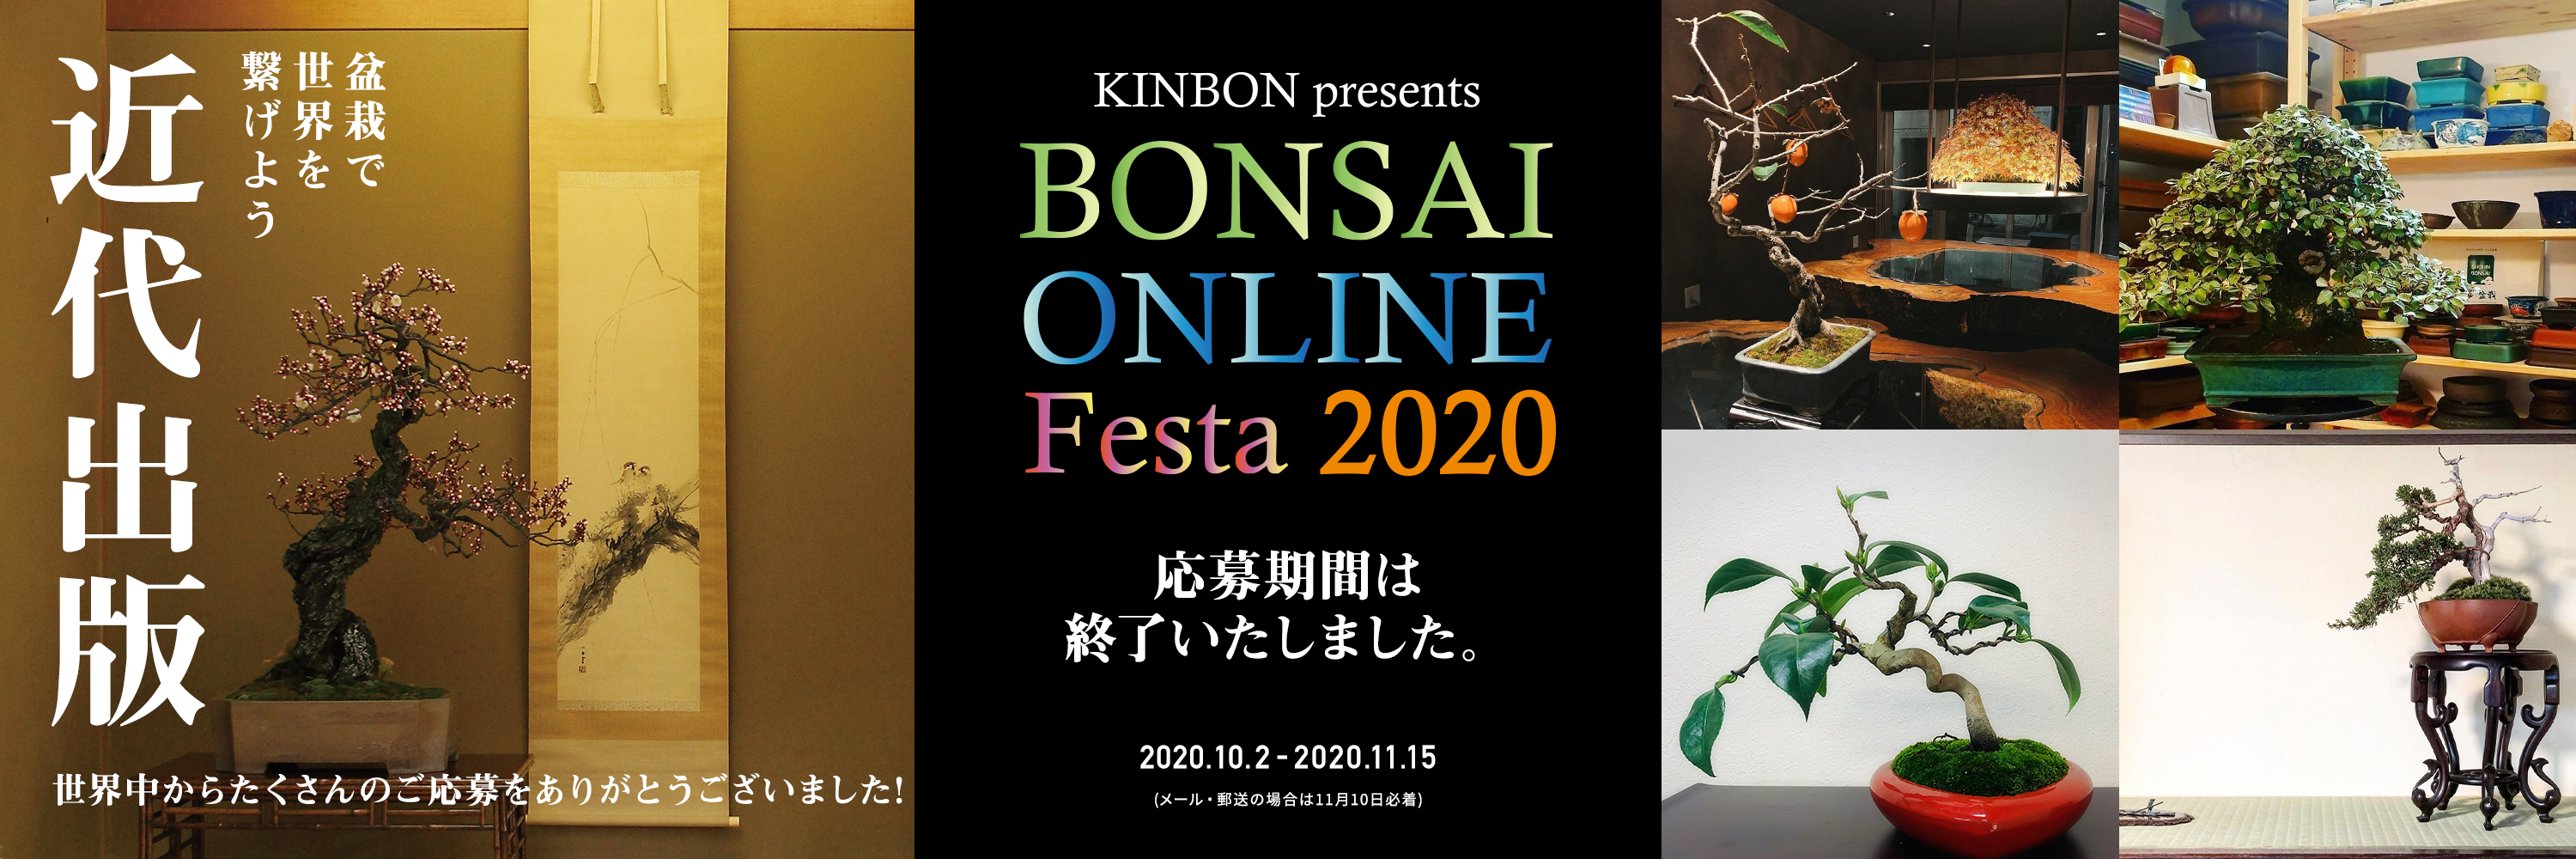 BONSAI ONLINE Festa 2020 結果発表